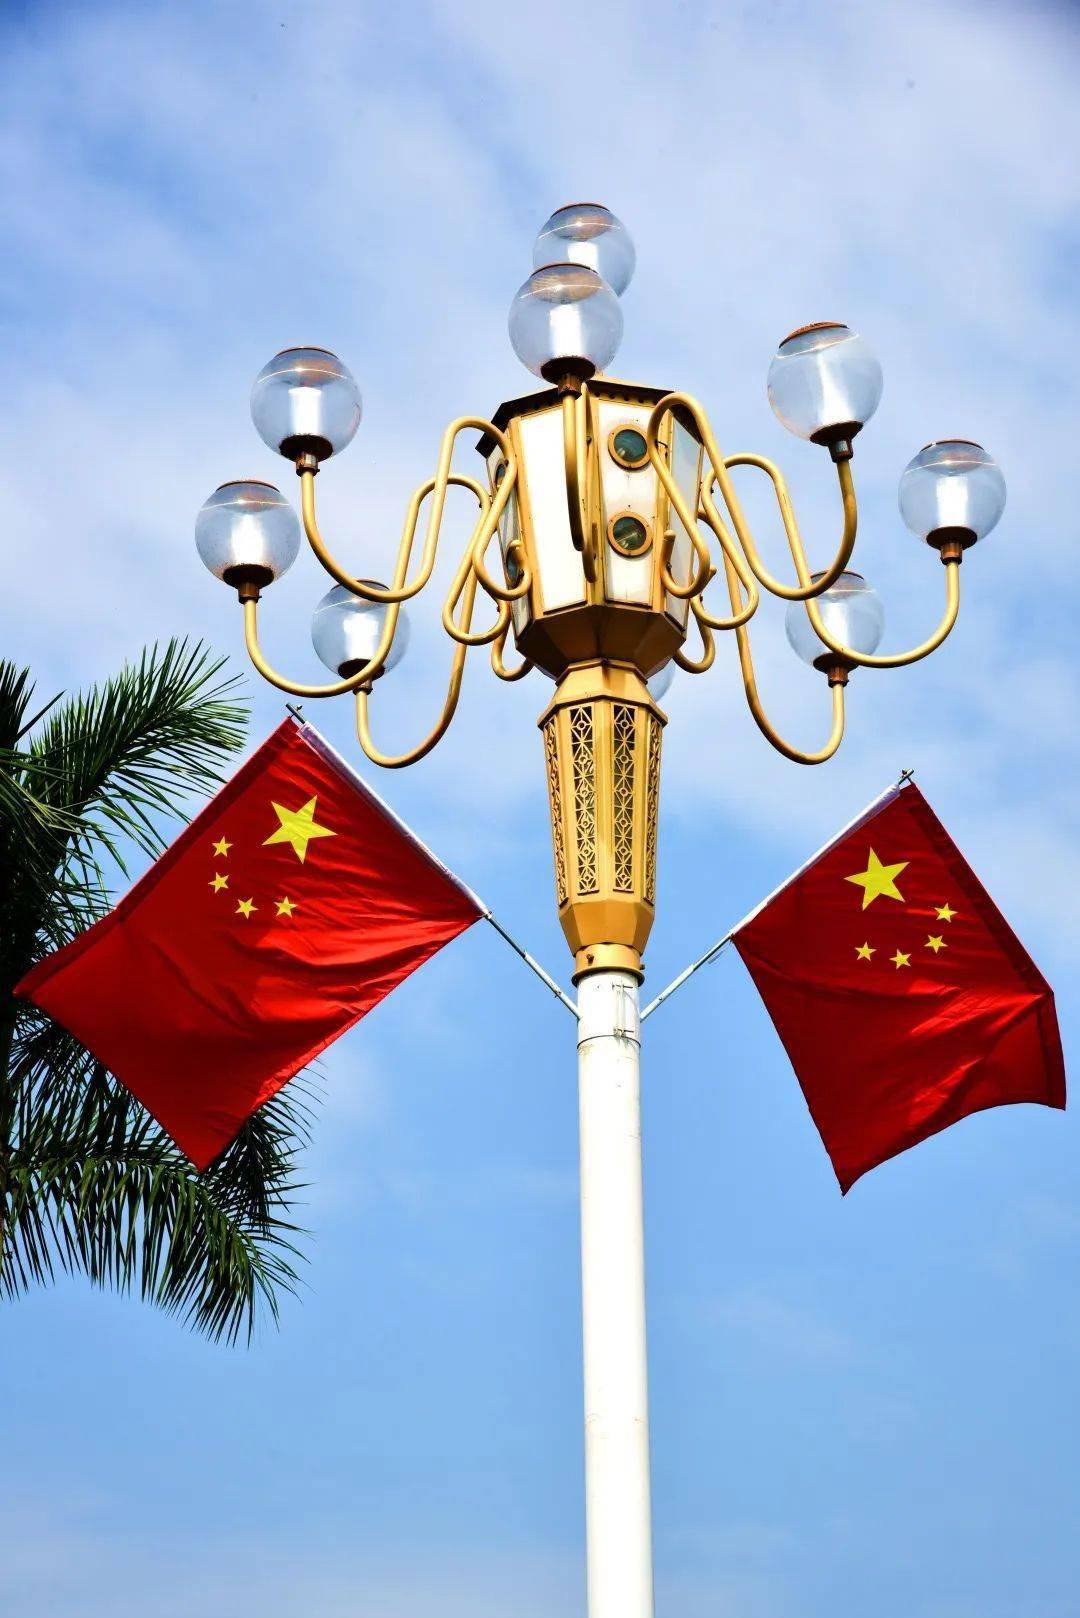 中国国旗五颗星图片